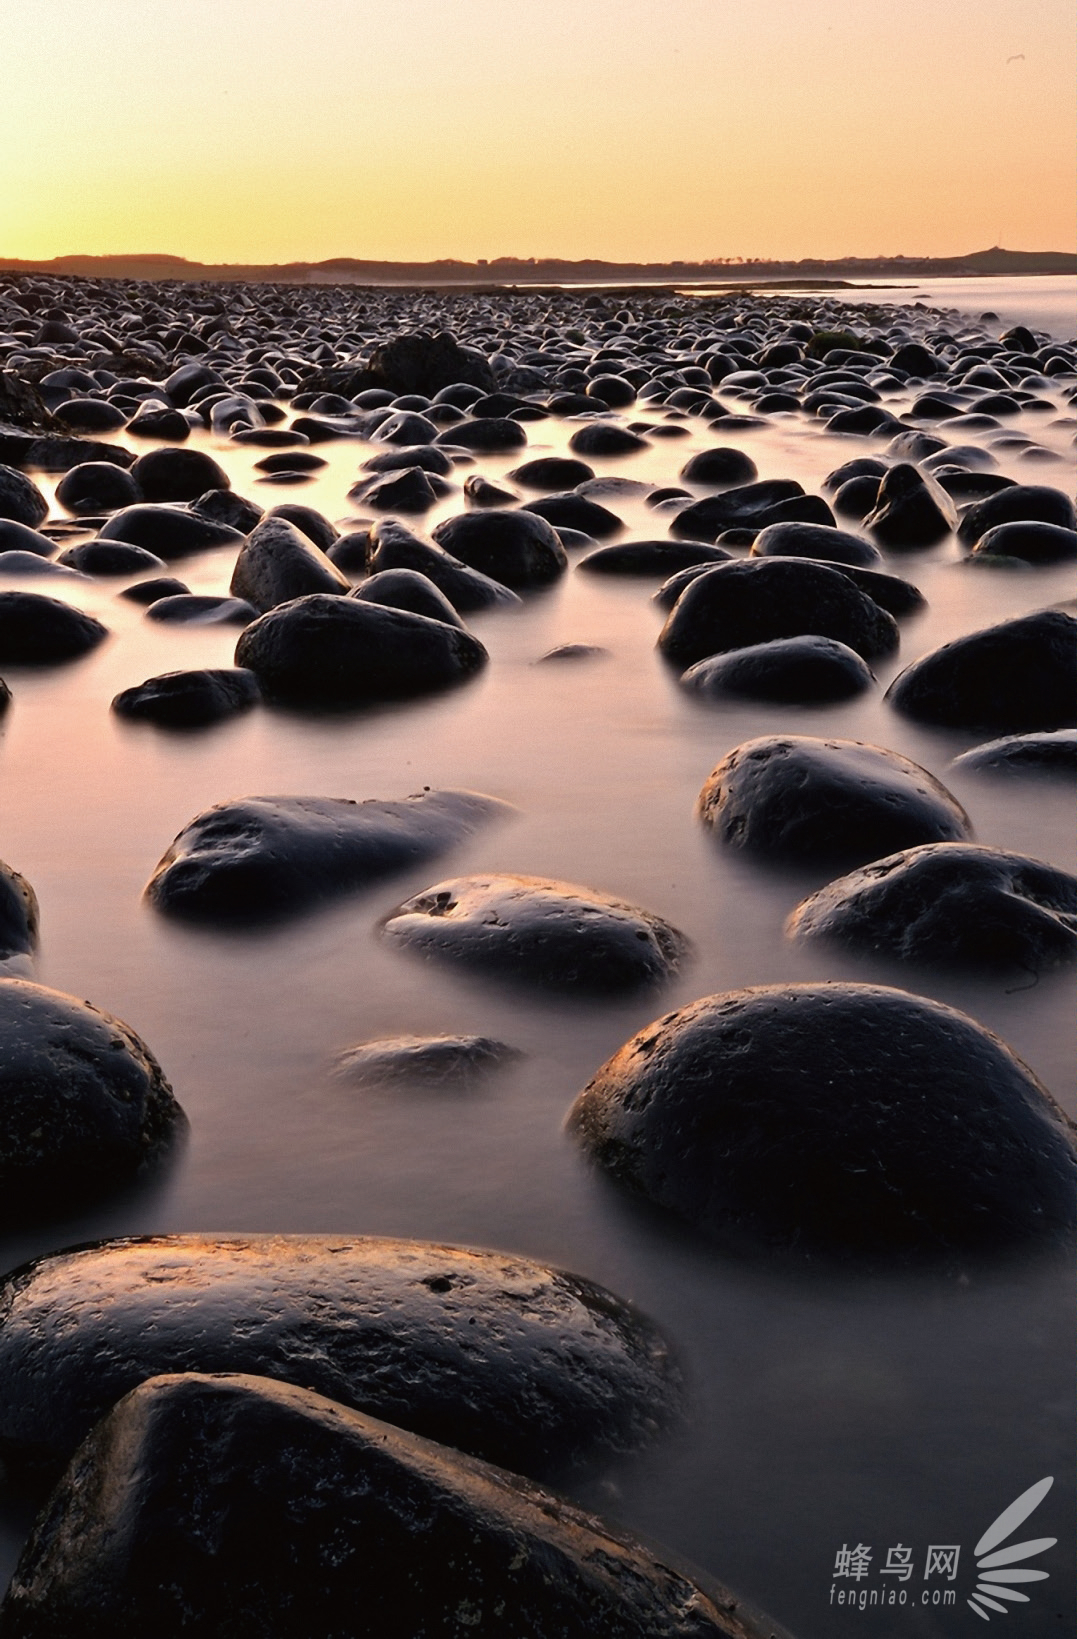 以河滩上的石头为元素,使其石头呈现为近大远小,画面节奏感,形式美感